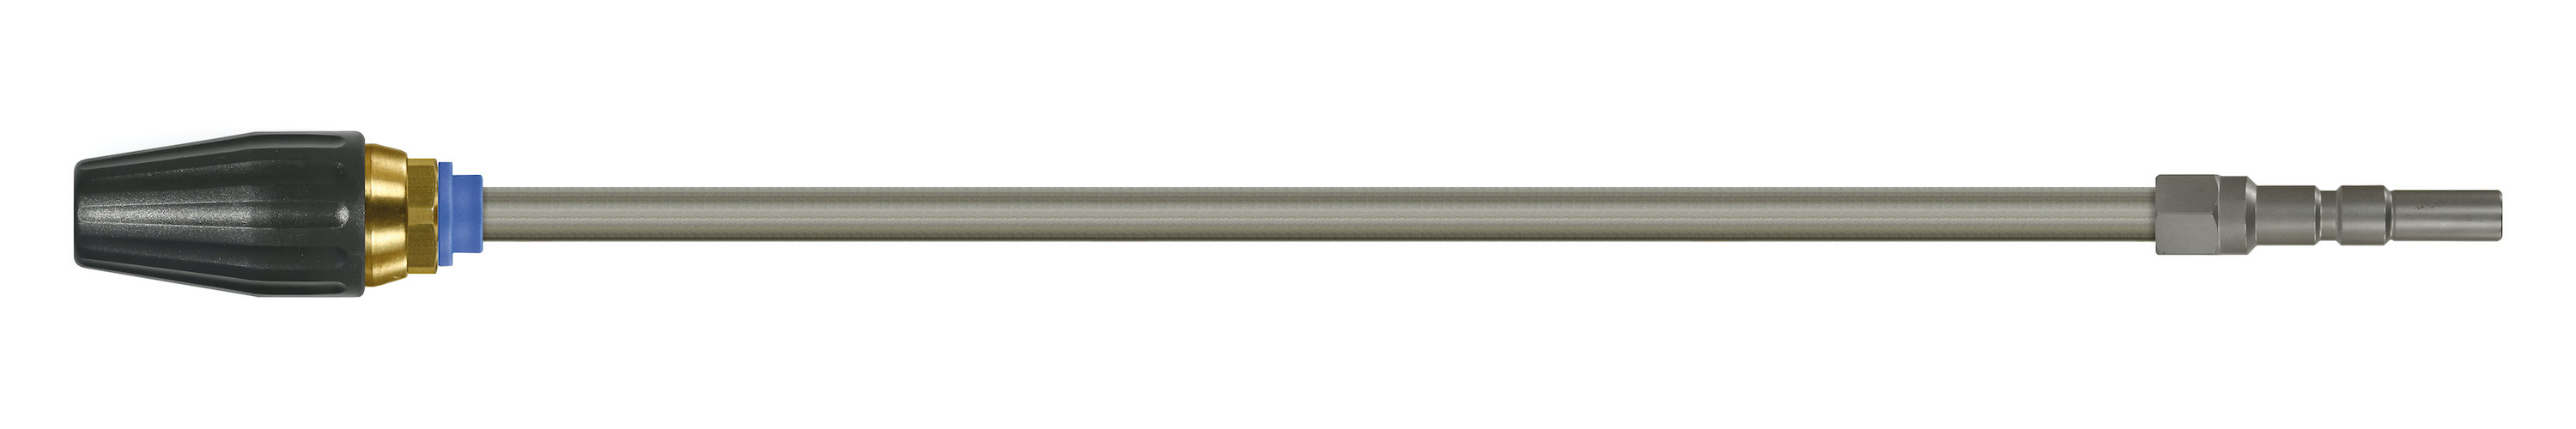 Coupleur KW. Lances tube zingué avec rotabuse ST-357.1. Cône 20°. 100 - 250 bar. Max. 100 °C, Calibre 070.